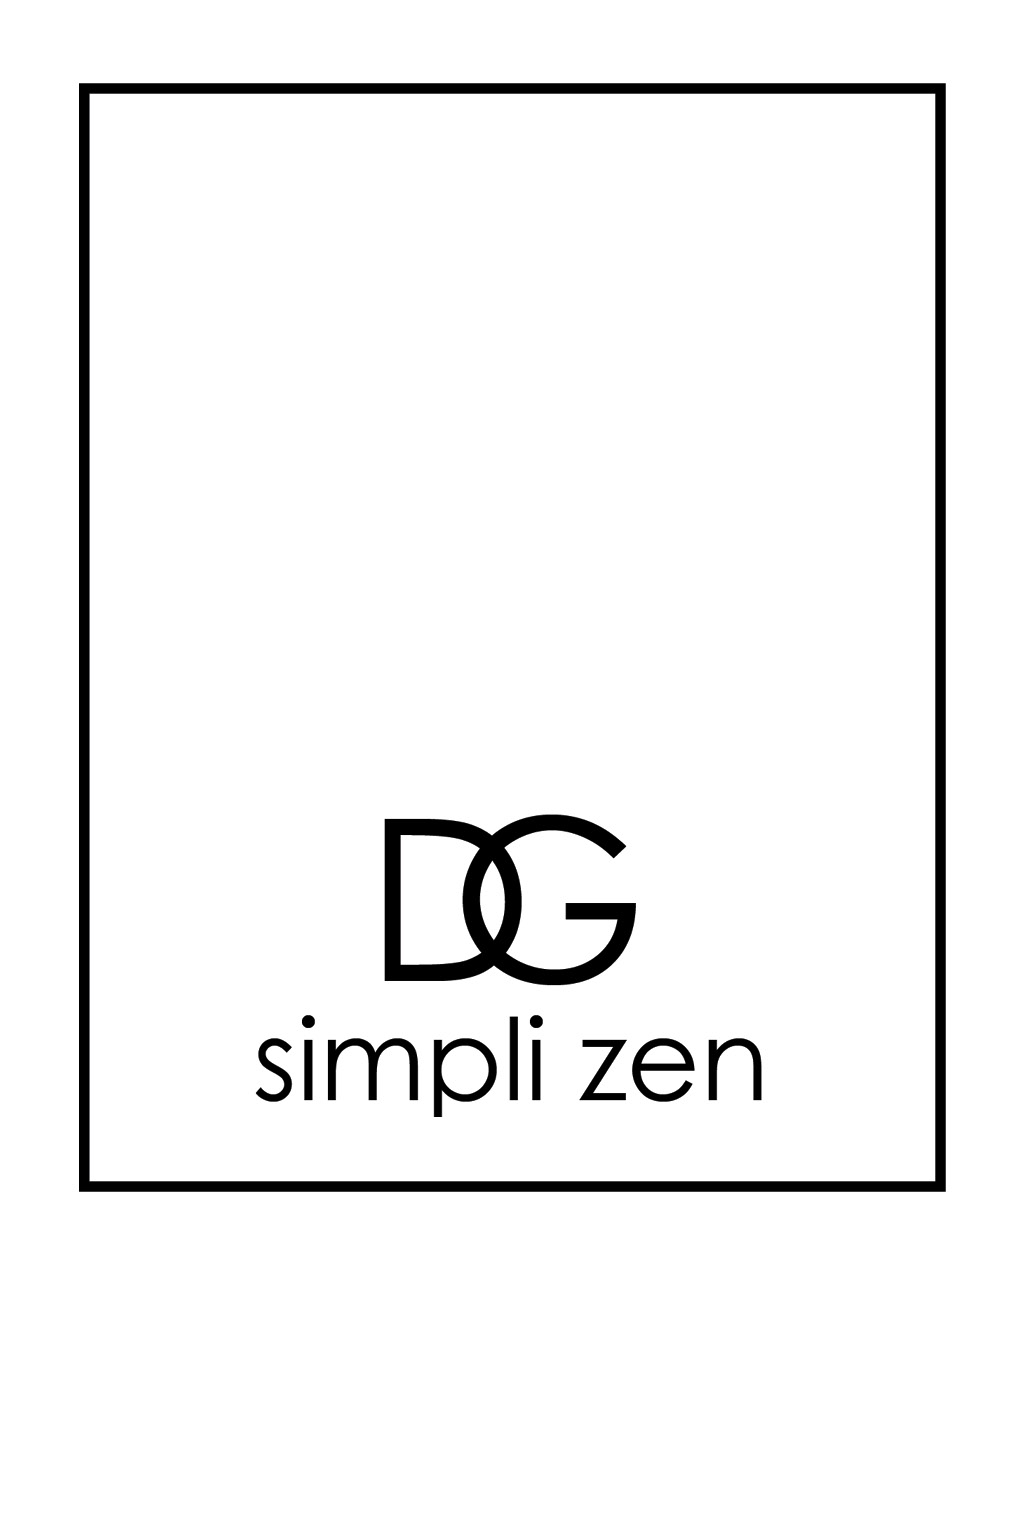 DG simpli zen